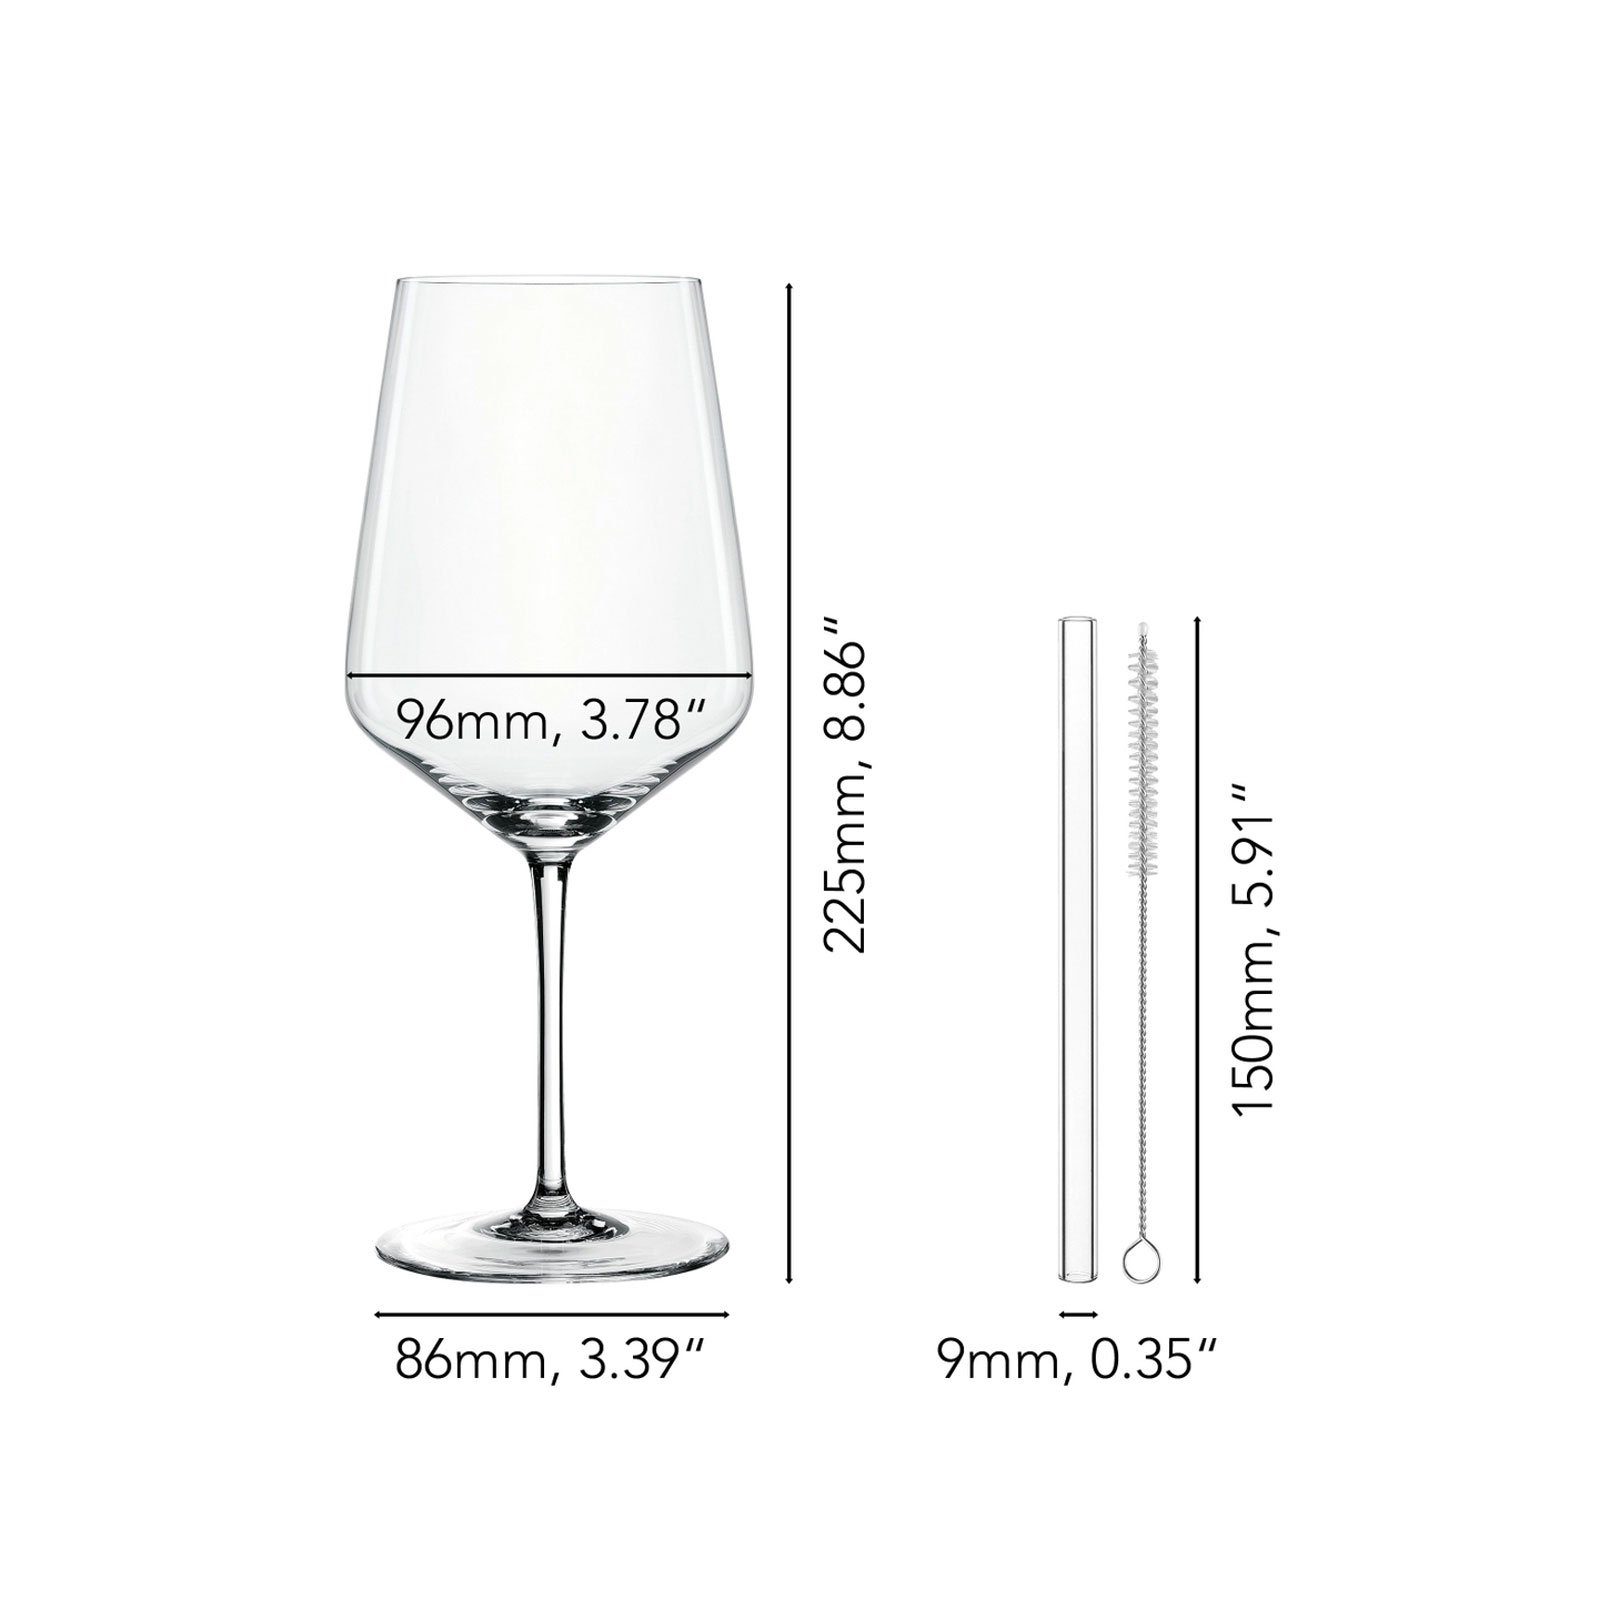 Cocktail/Spritz, 4 Nachtmann tlg. Glas